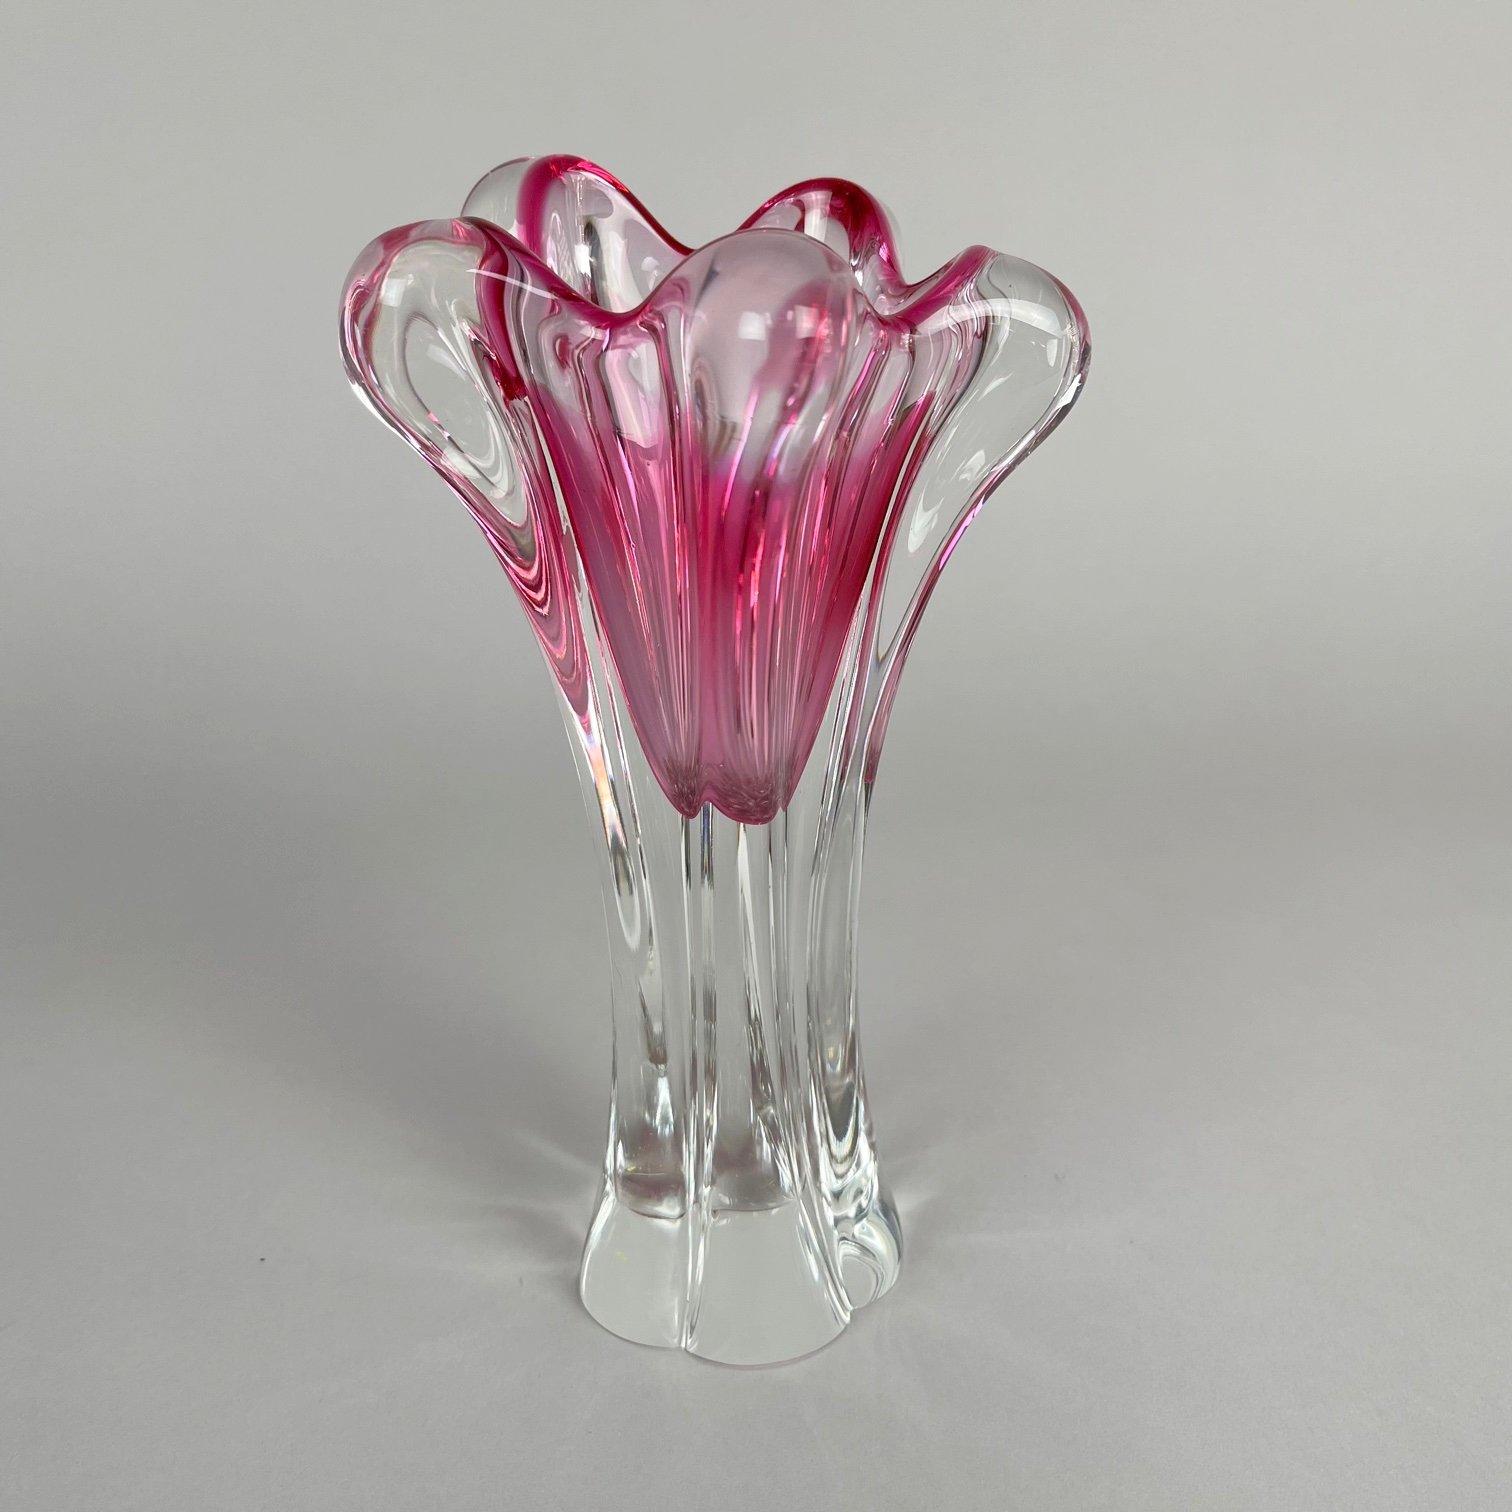 Mid-Century Modern Vintage Art Glass Vase by Josef Hospodka for Chribska Glasswork, 1960's For Sale